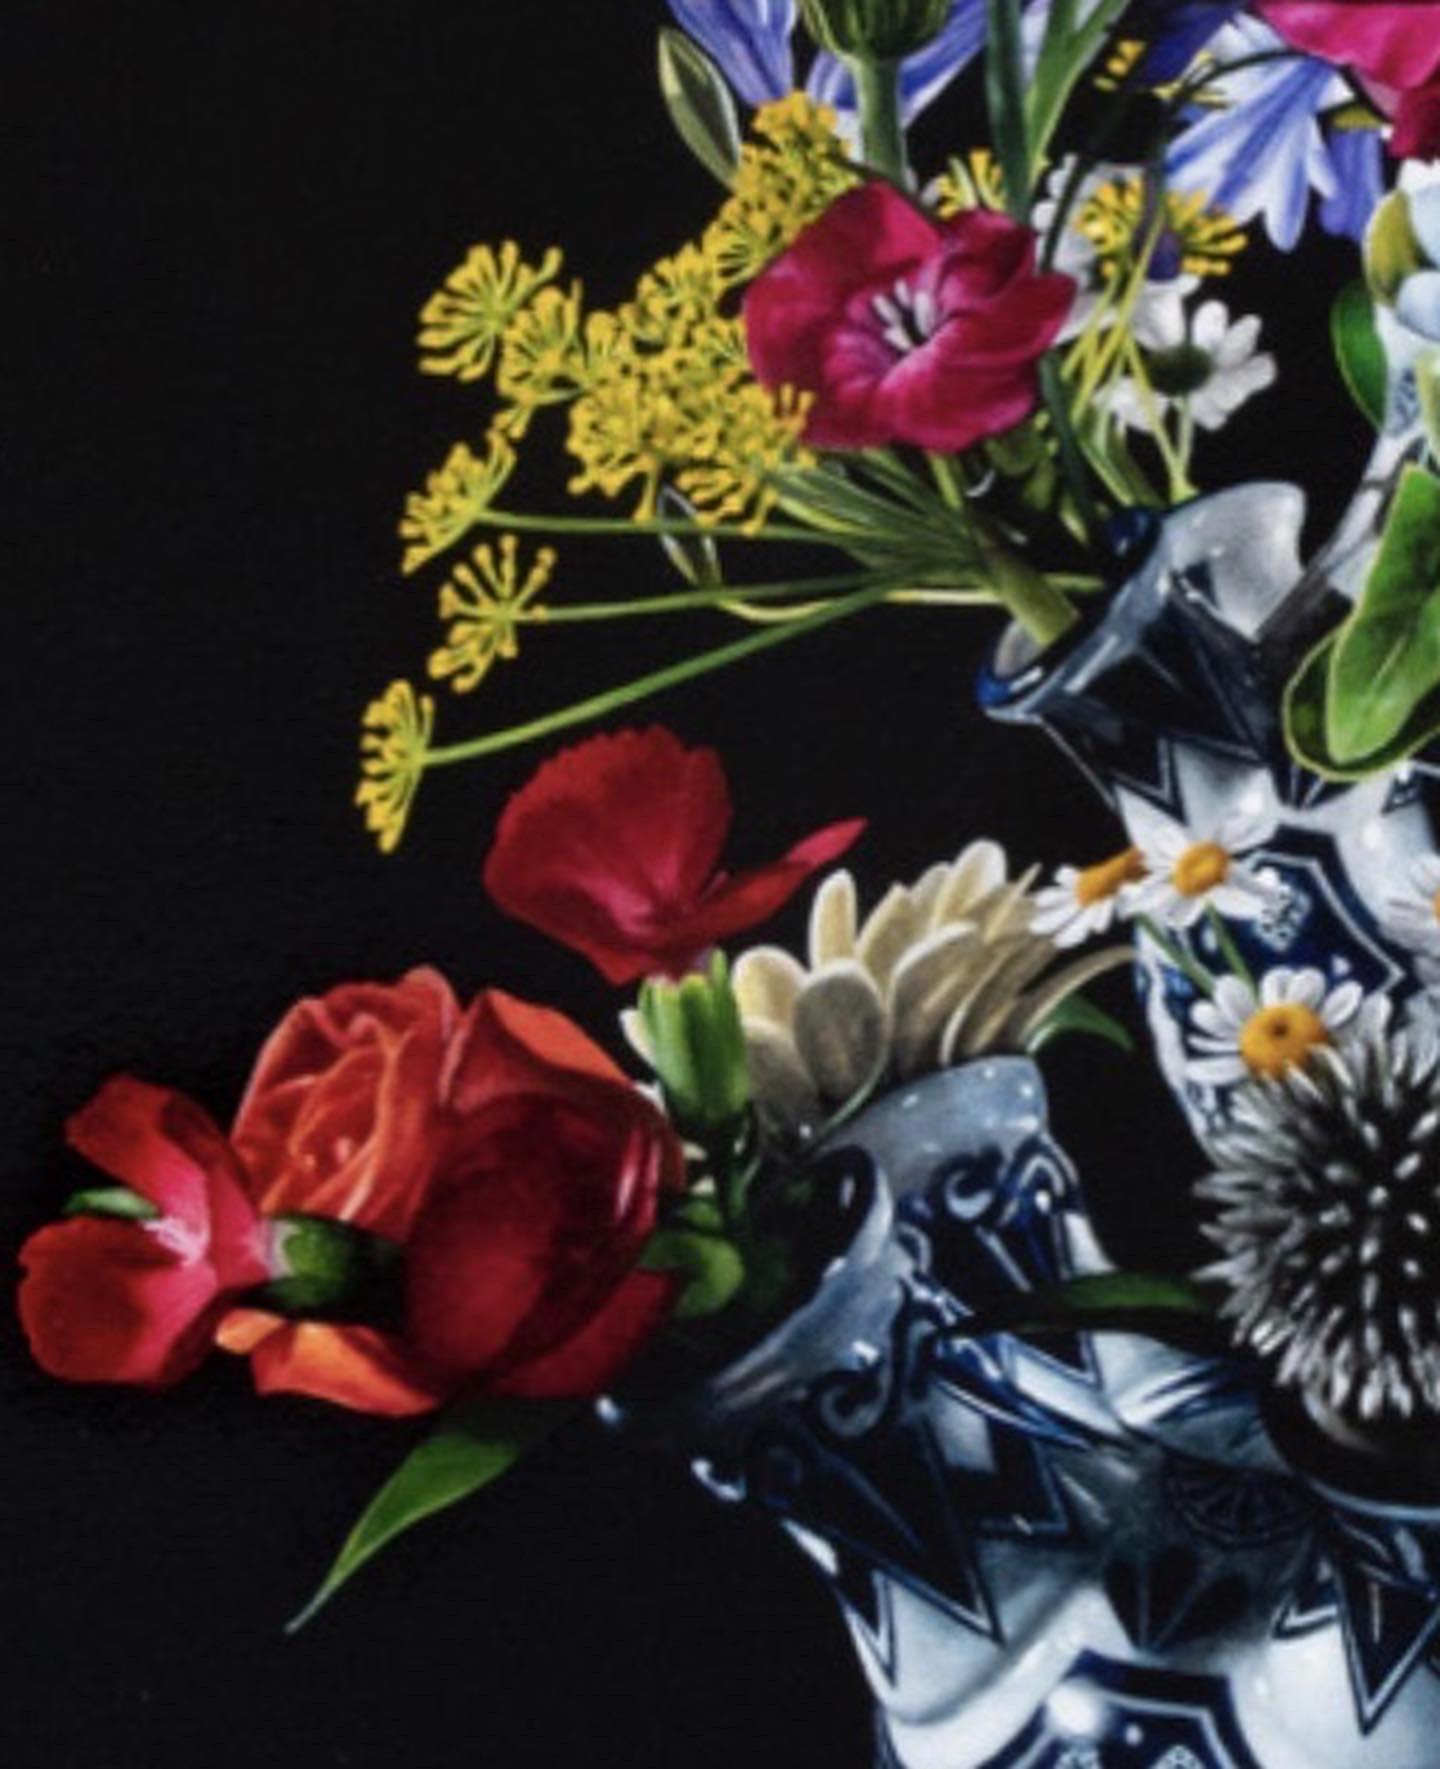 Joran van der Haar
Flowers
104 x 80 cm ( framed 116 x 92 cm, frame is included in price)
oil on canvas

The realistic painted 